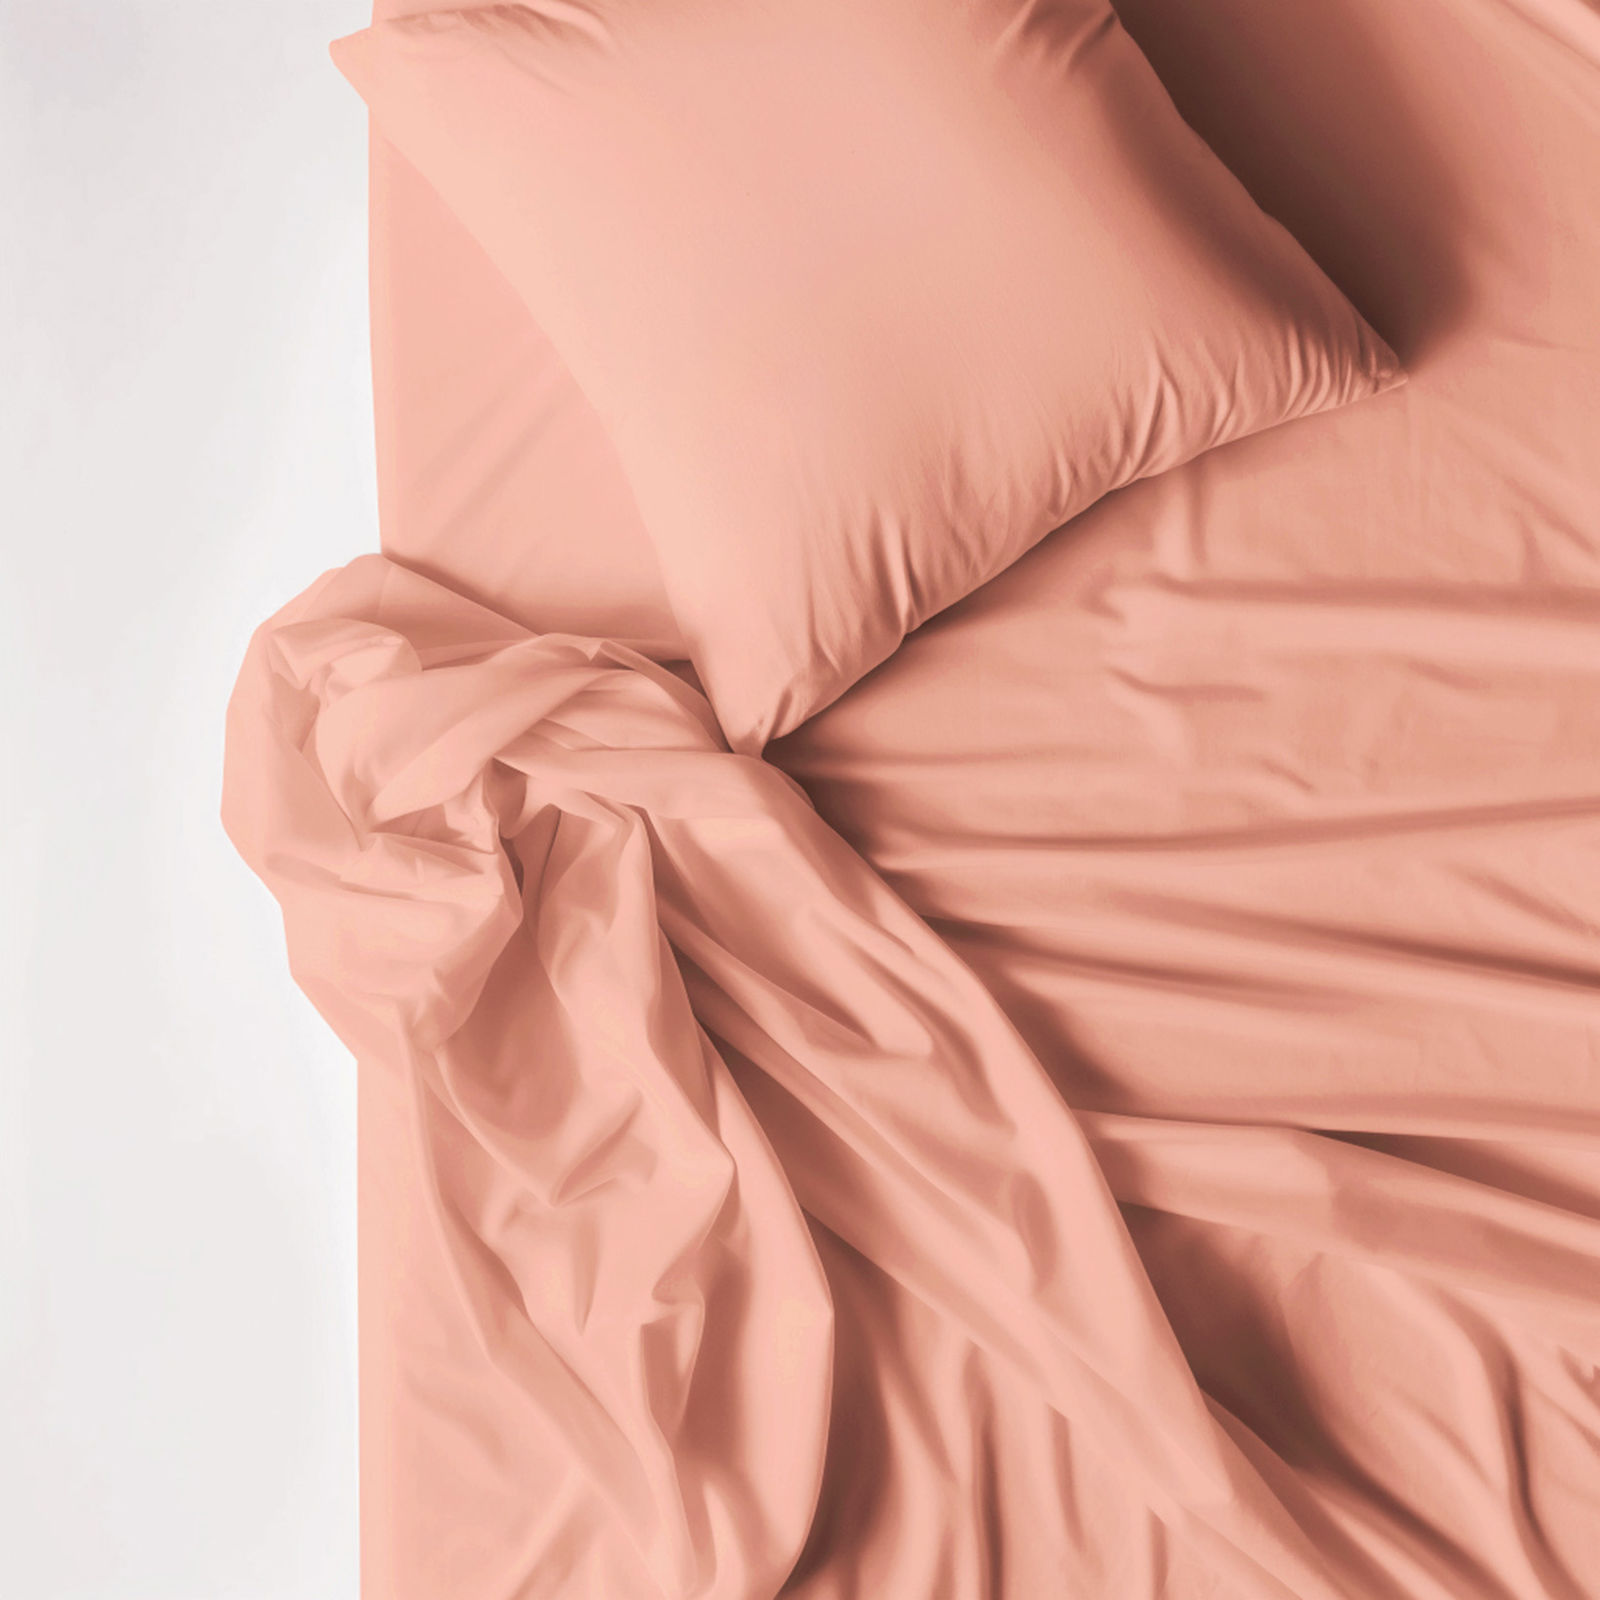 Bavlnené posteľné obliečky - lososové